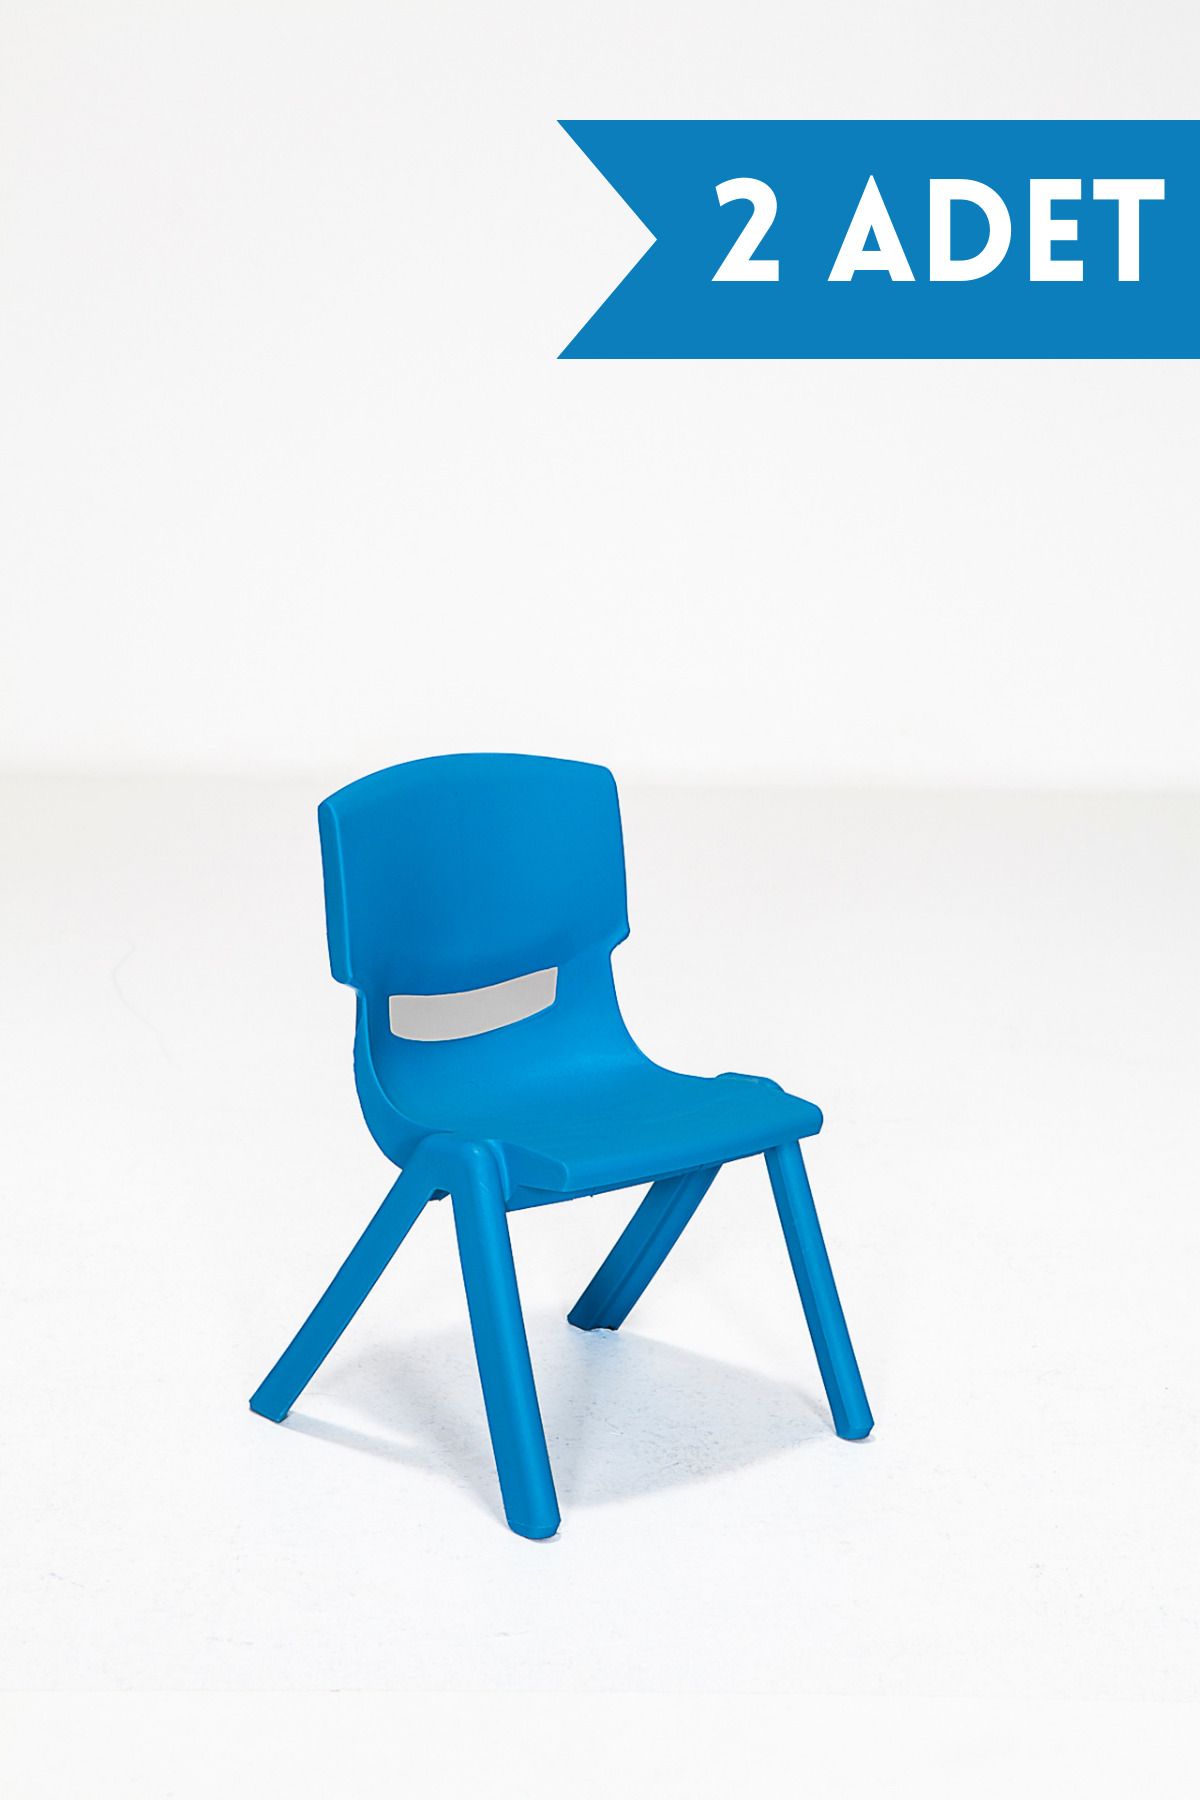 MOBETTO 2 Adet Kreş Anaokulu Çocuk Sandalyesi Sert Plastik- Mavi